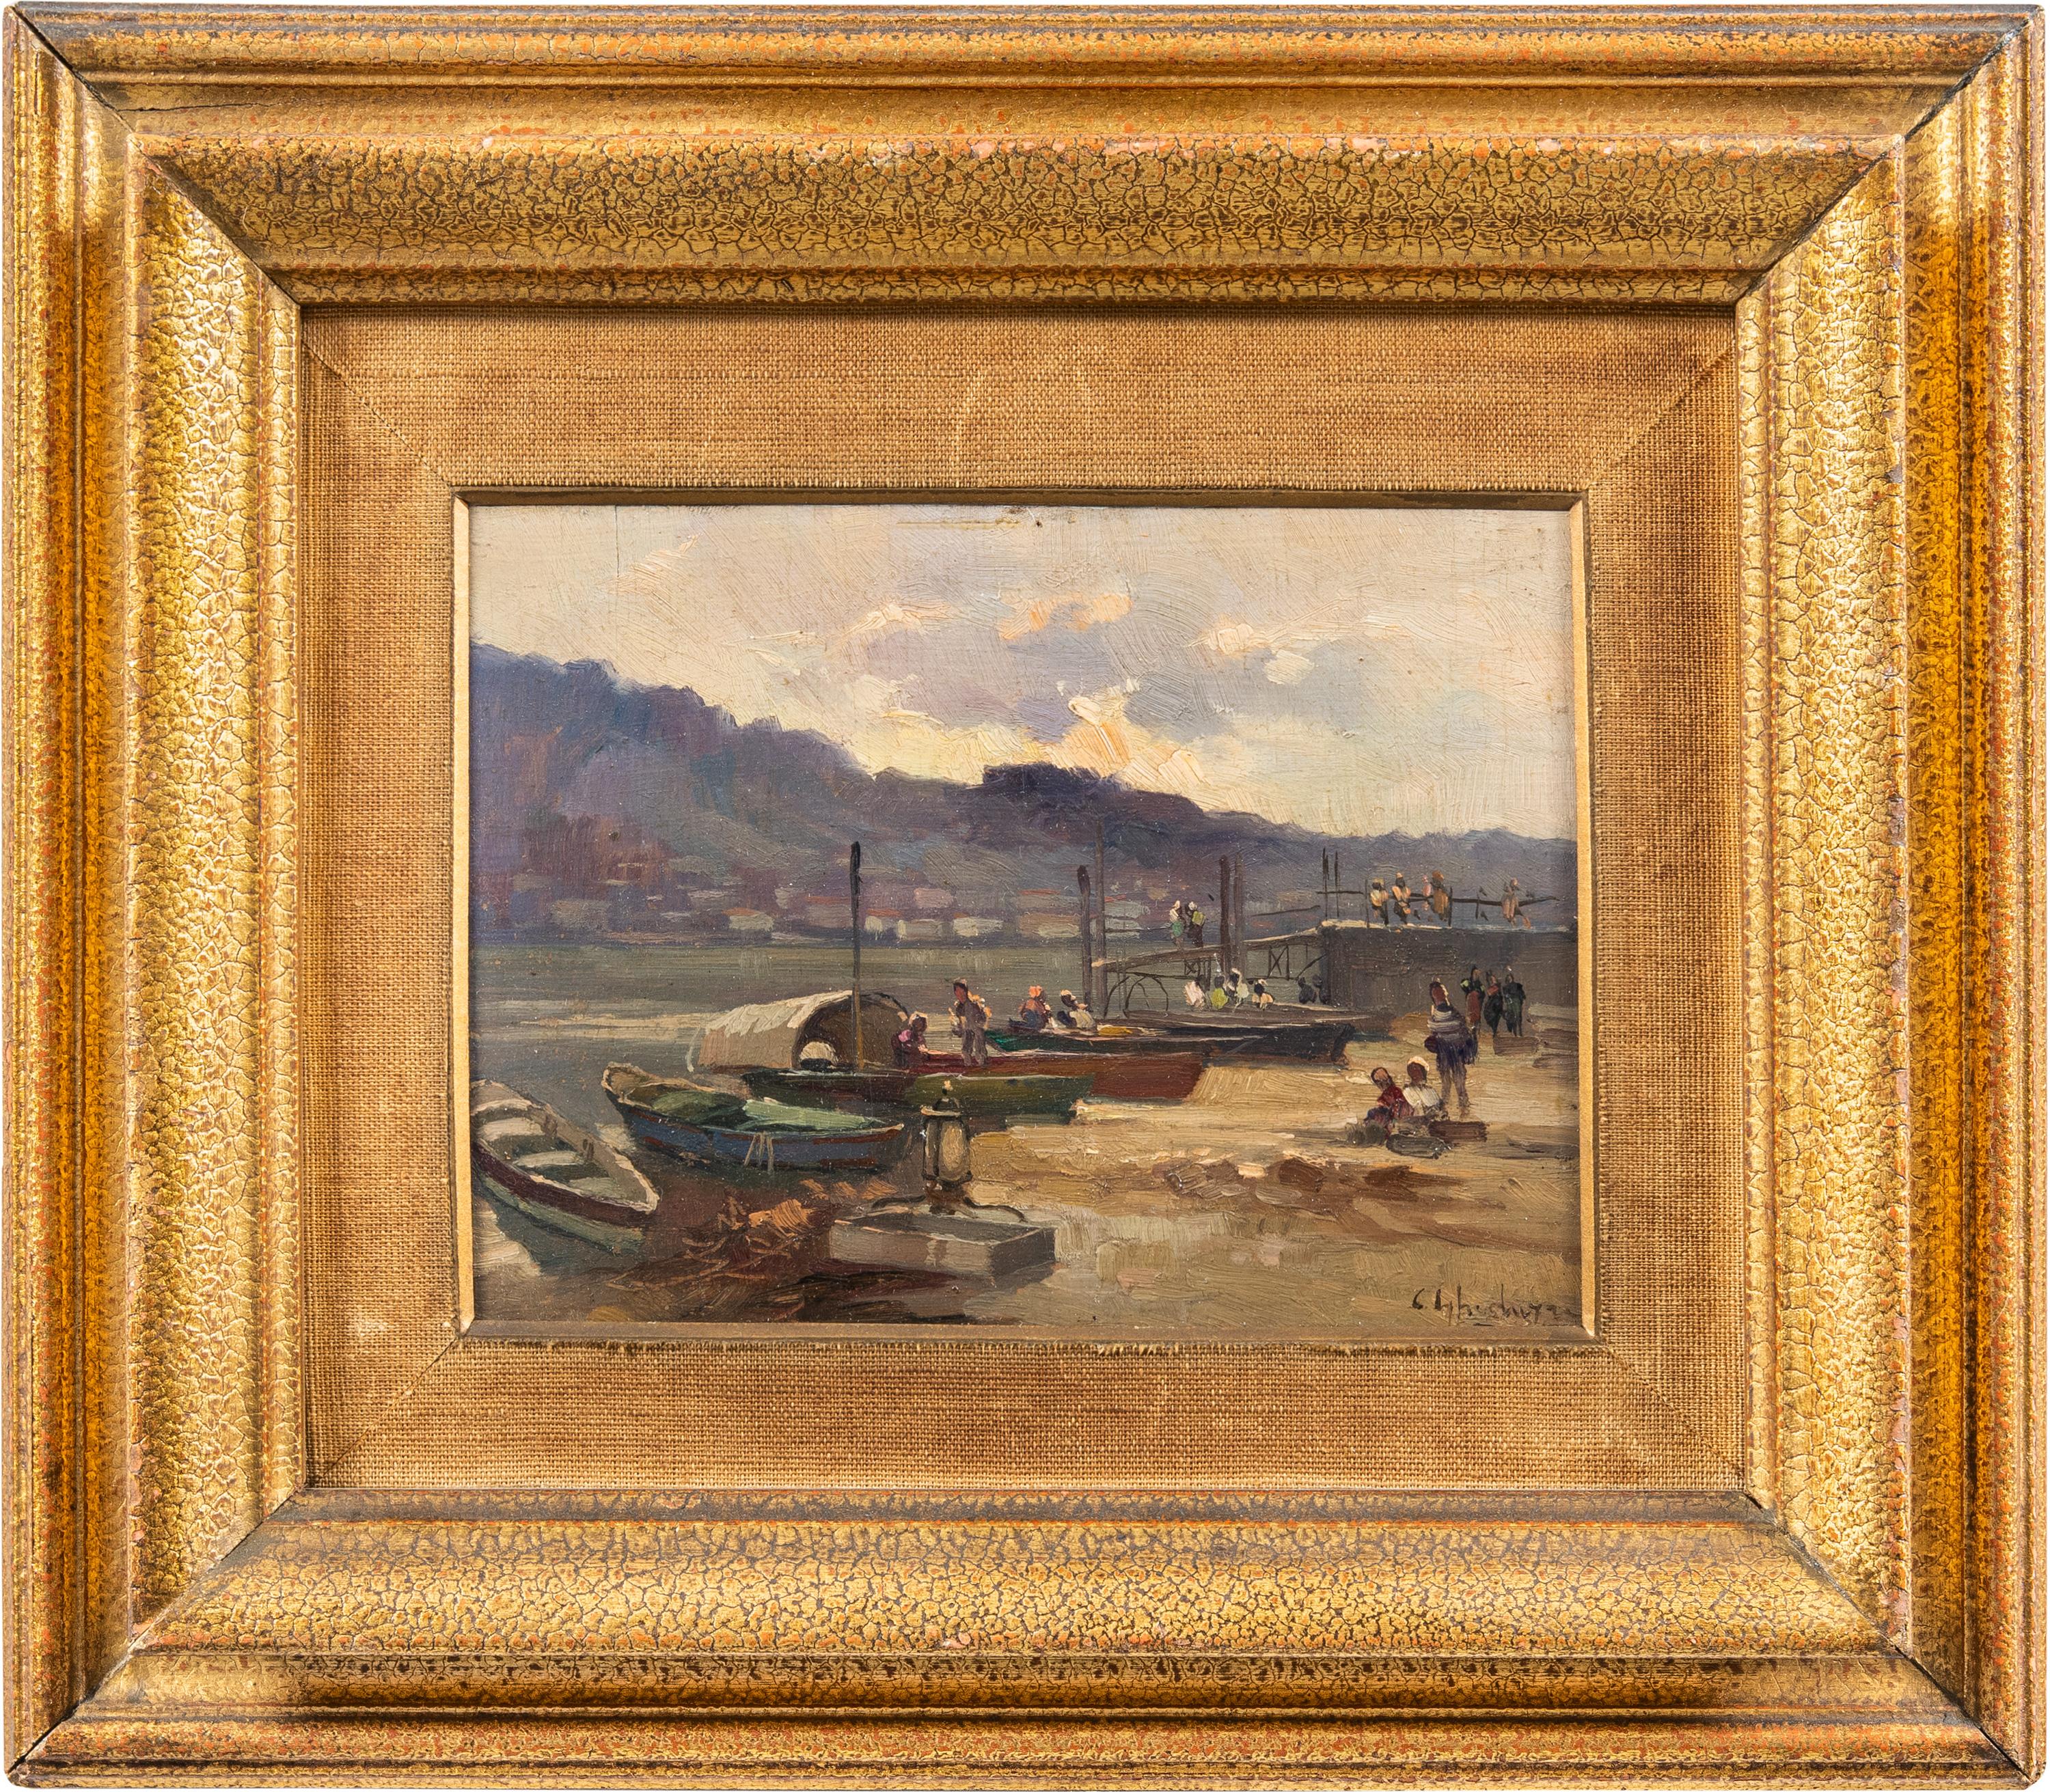 Cesare Gheduzzi - 20th century landscape painting - Harbor scene - Italy